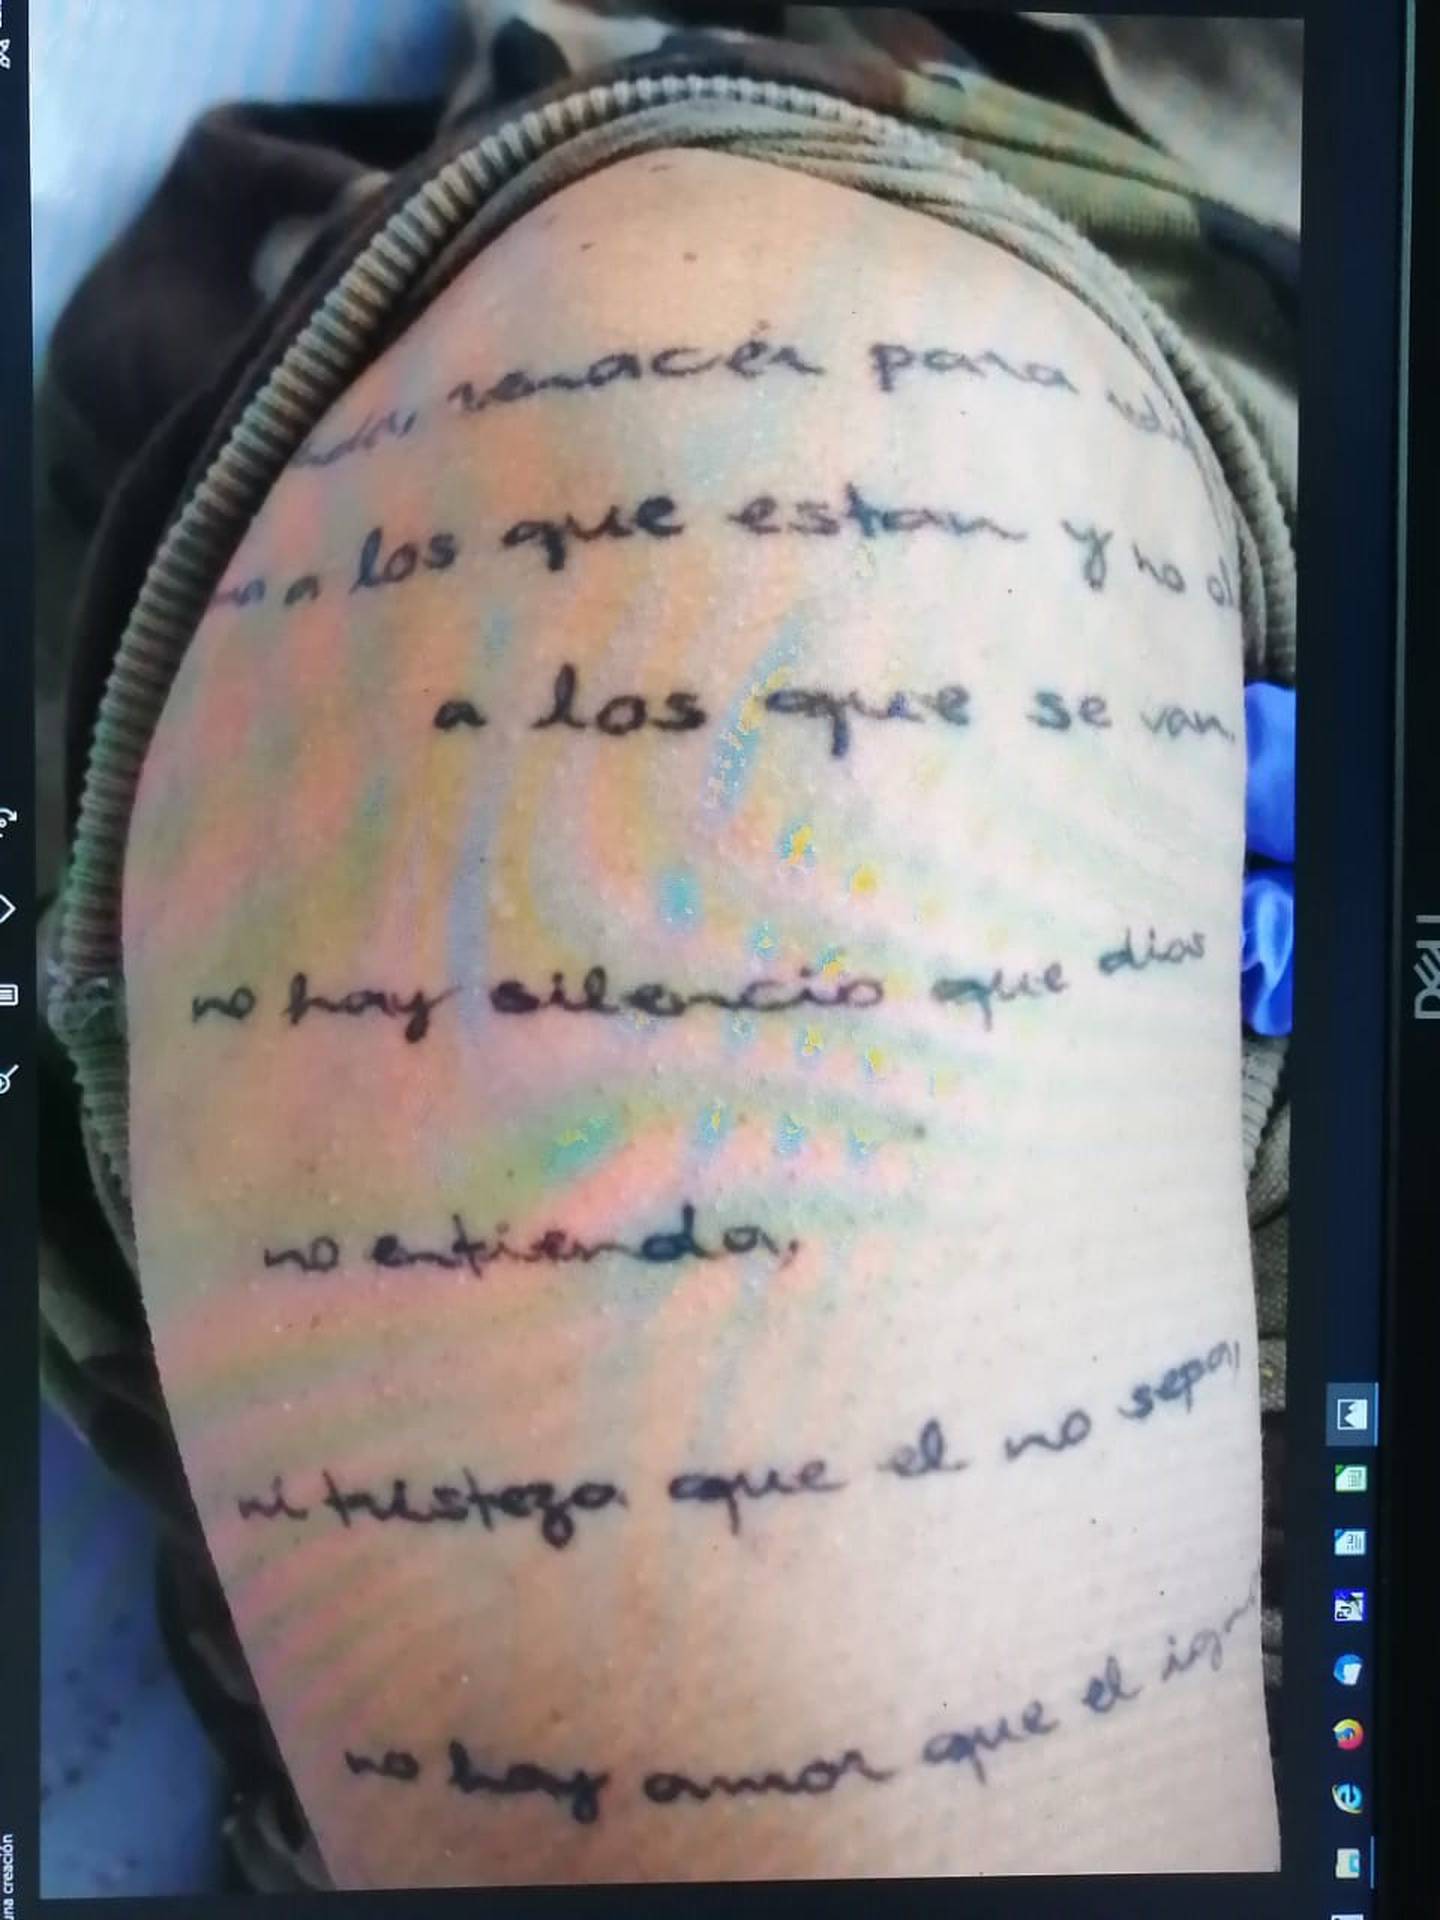 El mismo fallecido con tatuaje de una cara de lobo tiene en el brazo derecho esta leyenda. El OIJ pide ayuda para identificarlo y tratar de esclarecer el caso de la narcoavioneta de Nandayure. Foto: OIJ.